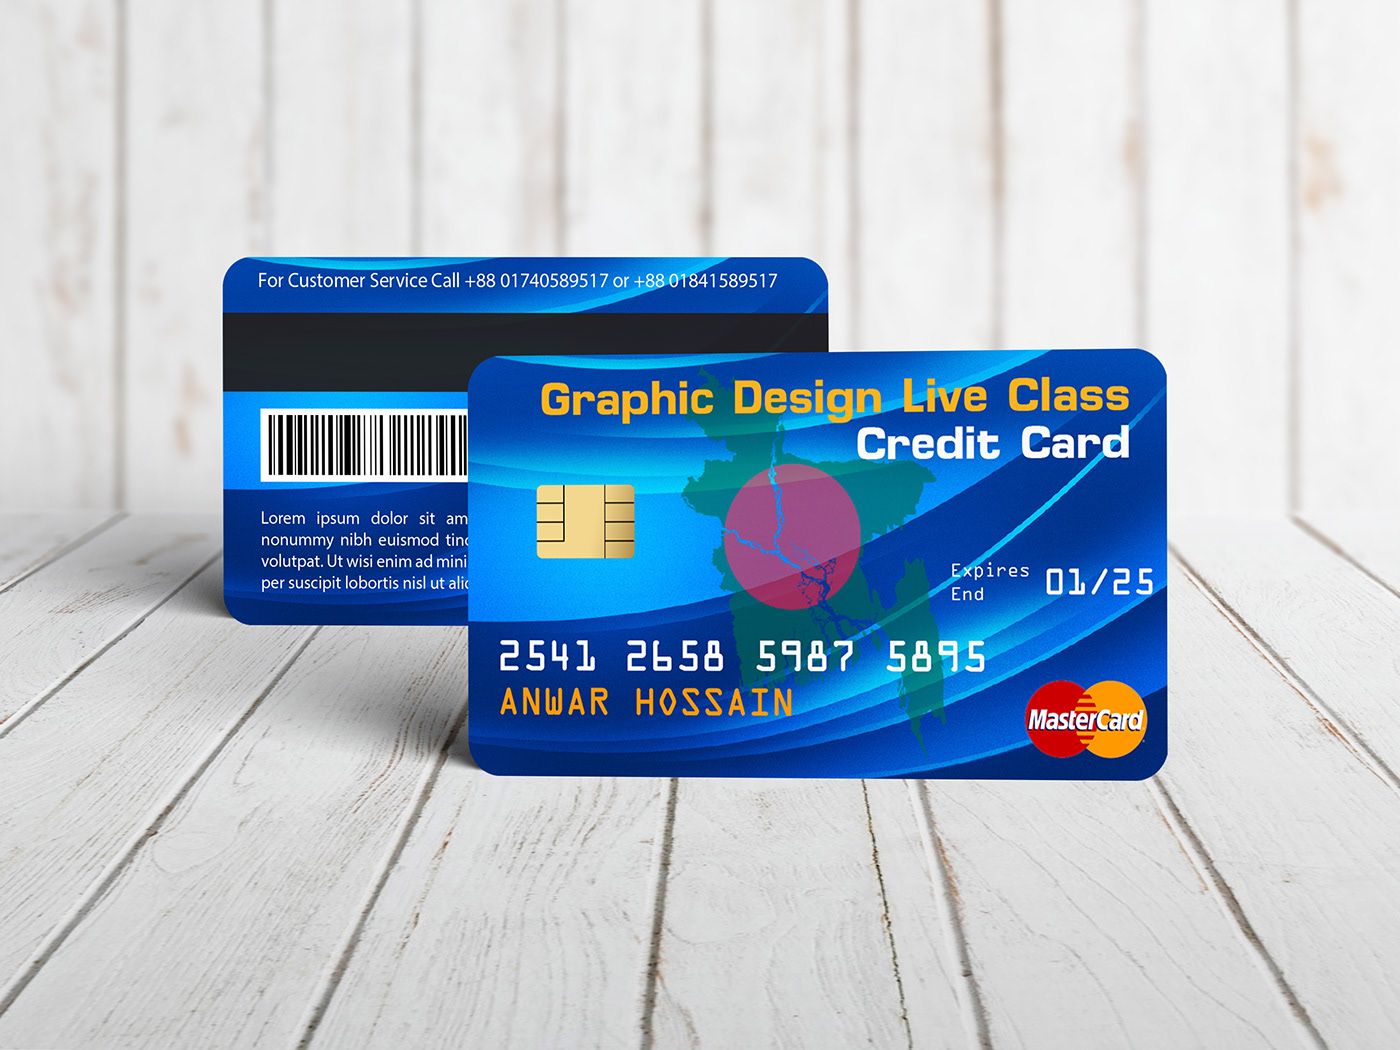 credit card loyality card master card membership card mockup money user card visa mastercard Master card visa card